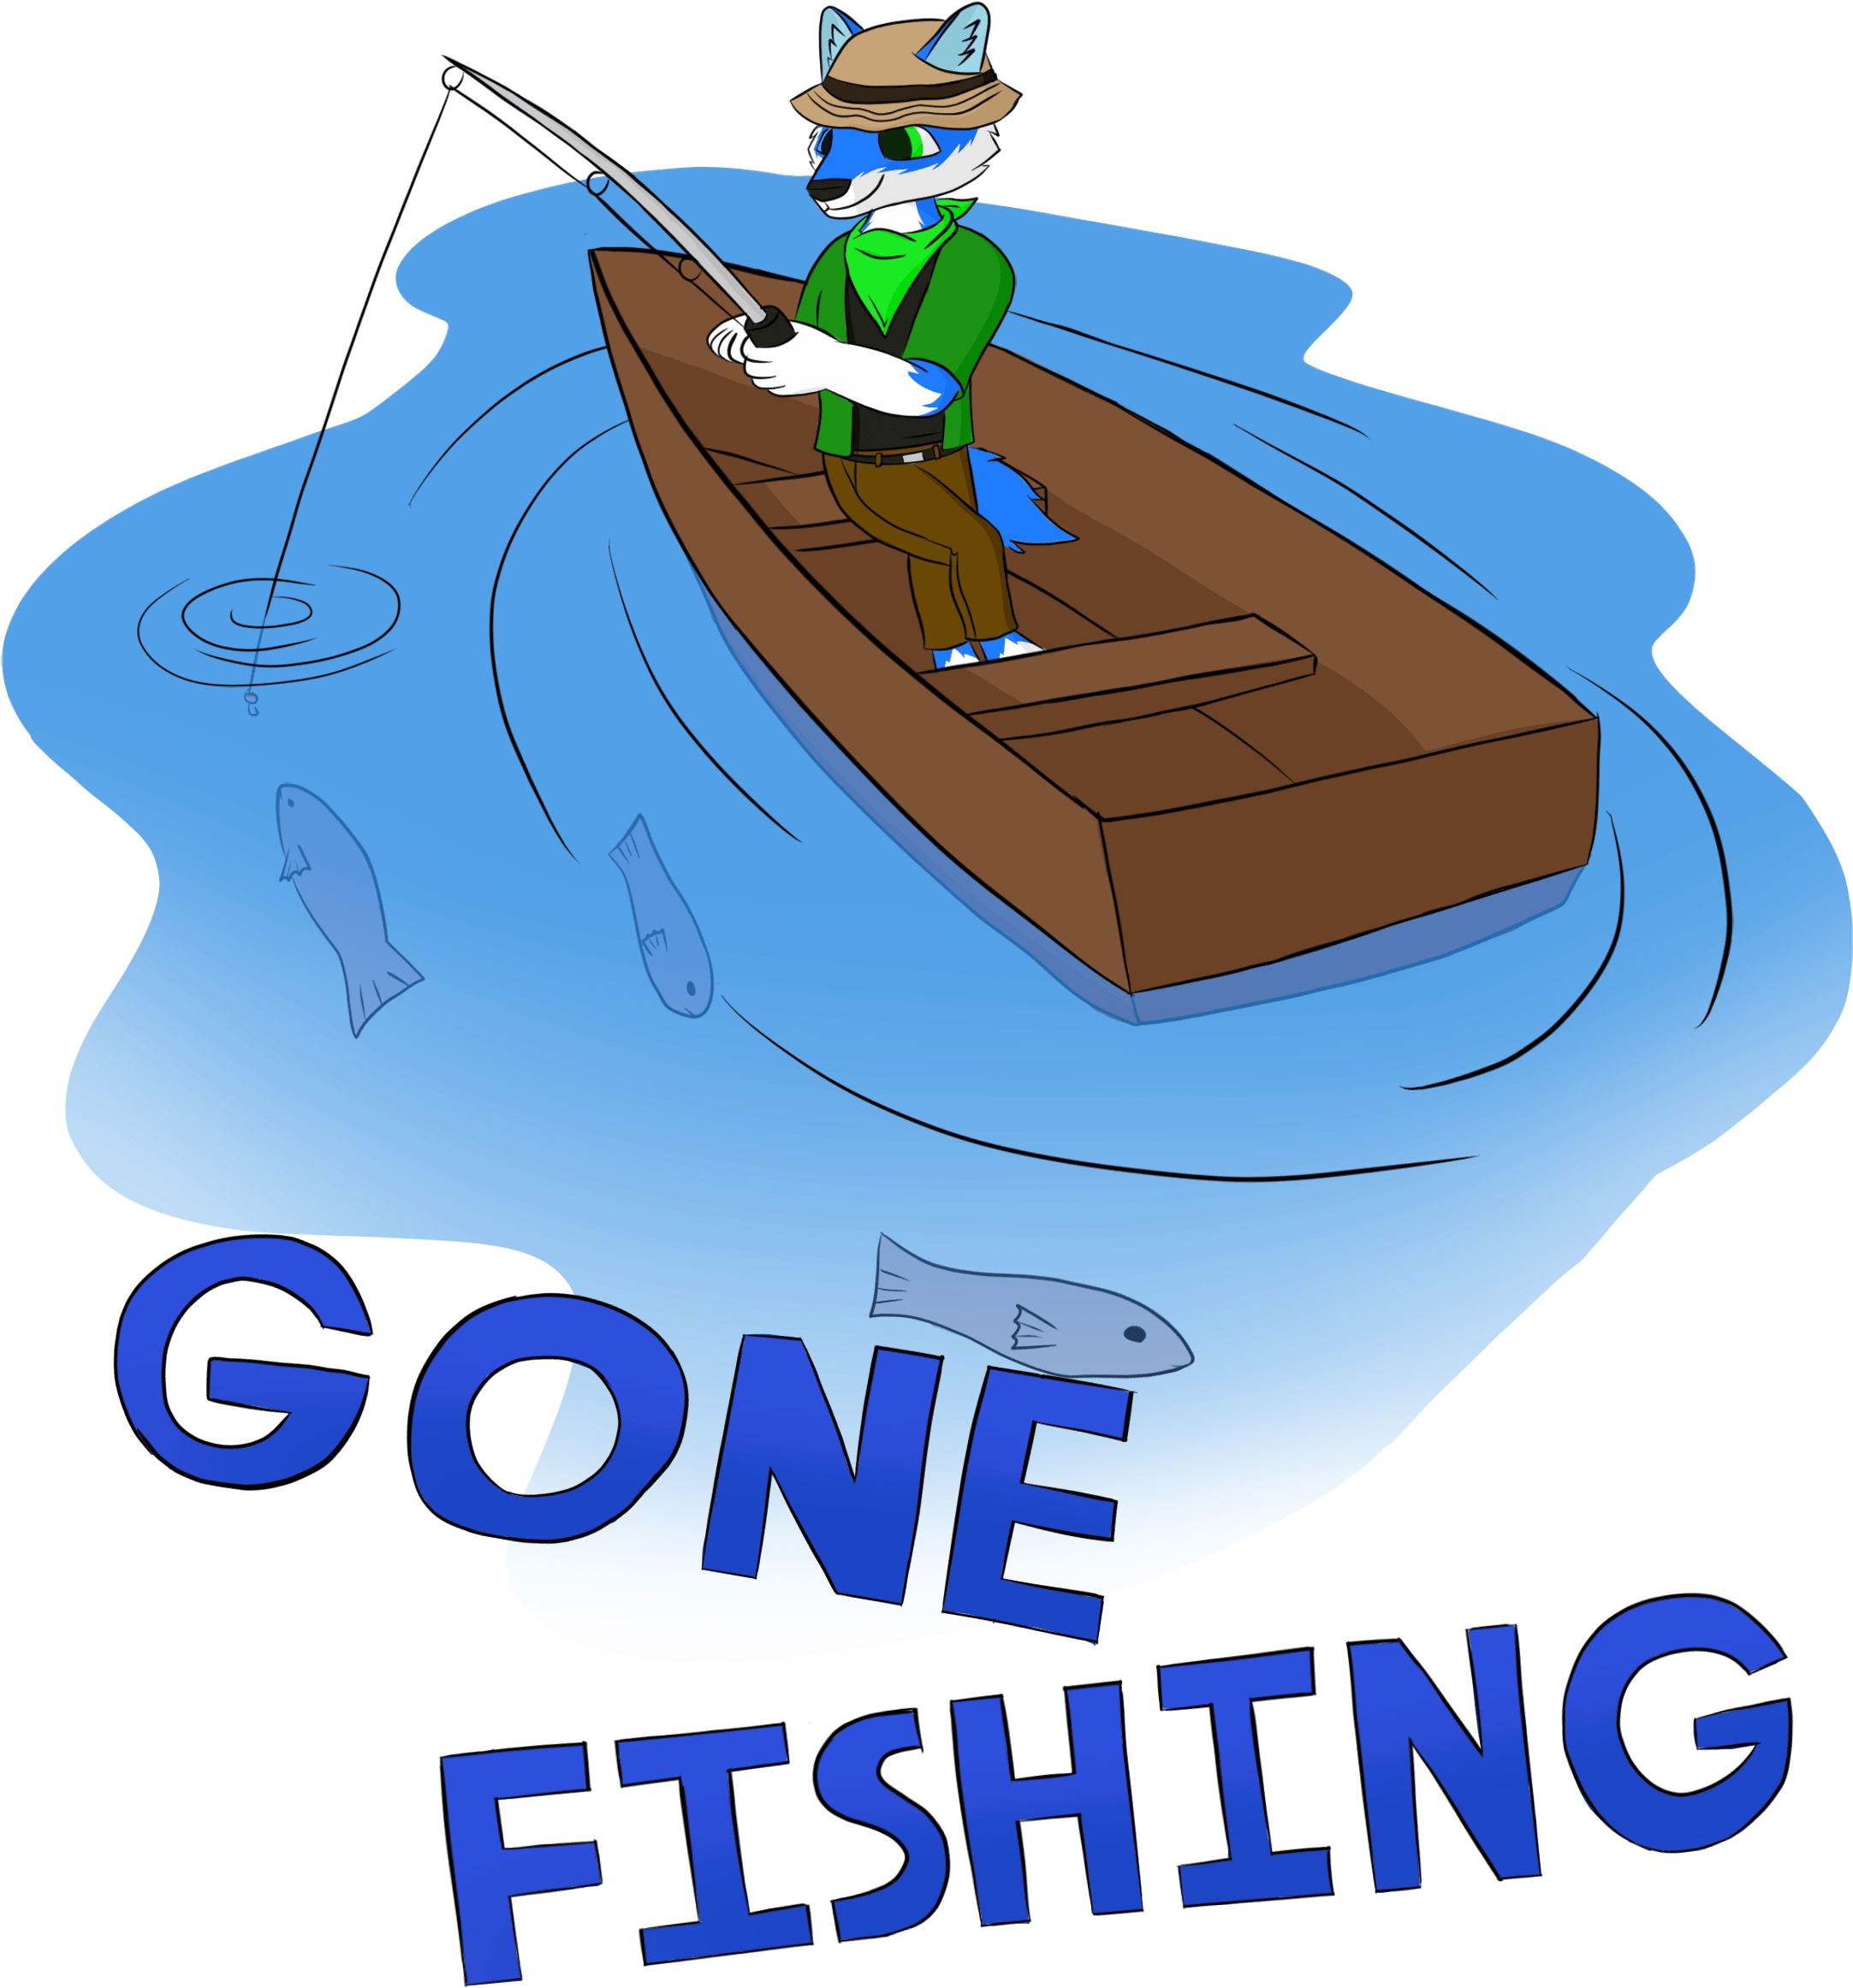 Gone Fishing - Gone Fishin' (2200x3000), Png Download